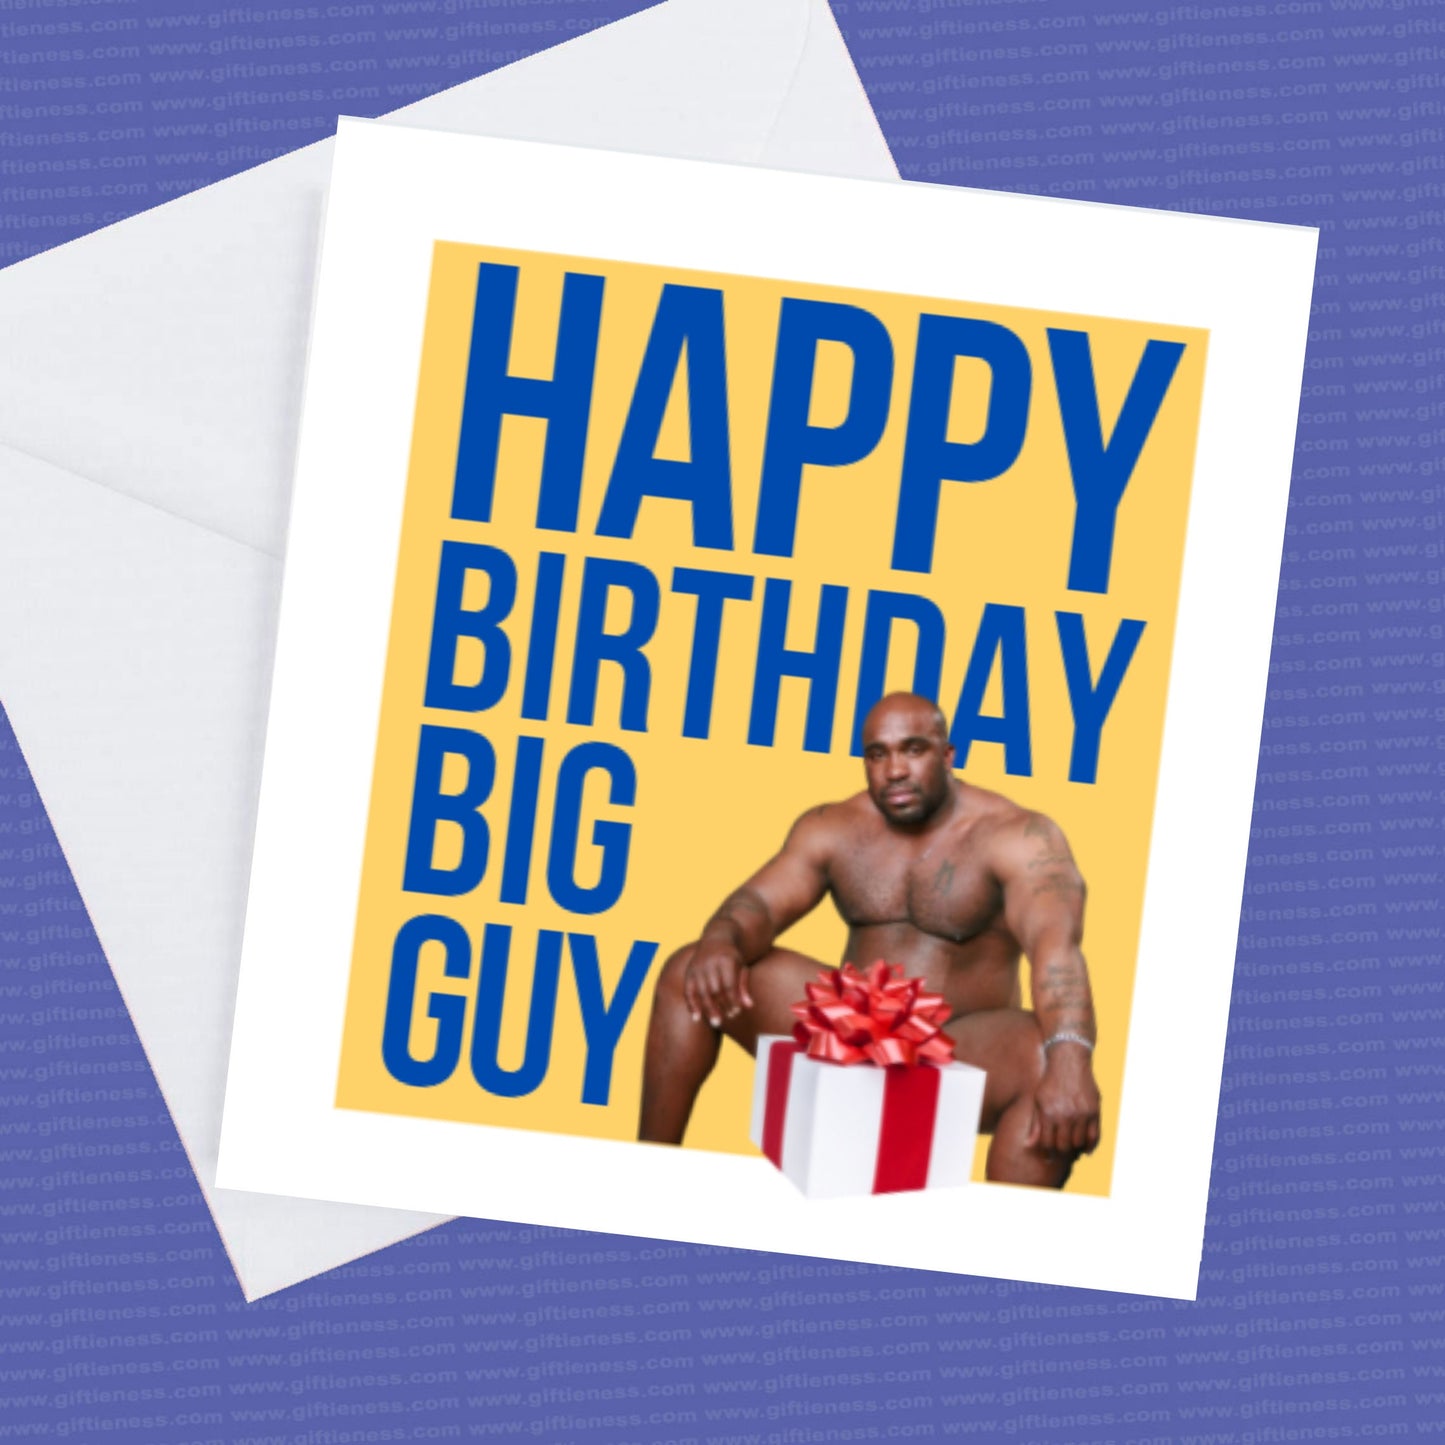 Happy Birthday Big Guy, Fun Barry Birthday Card